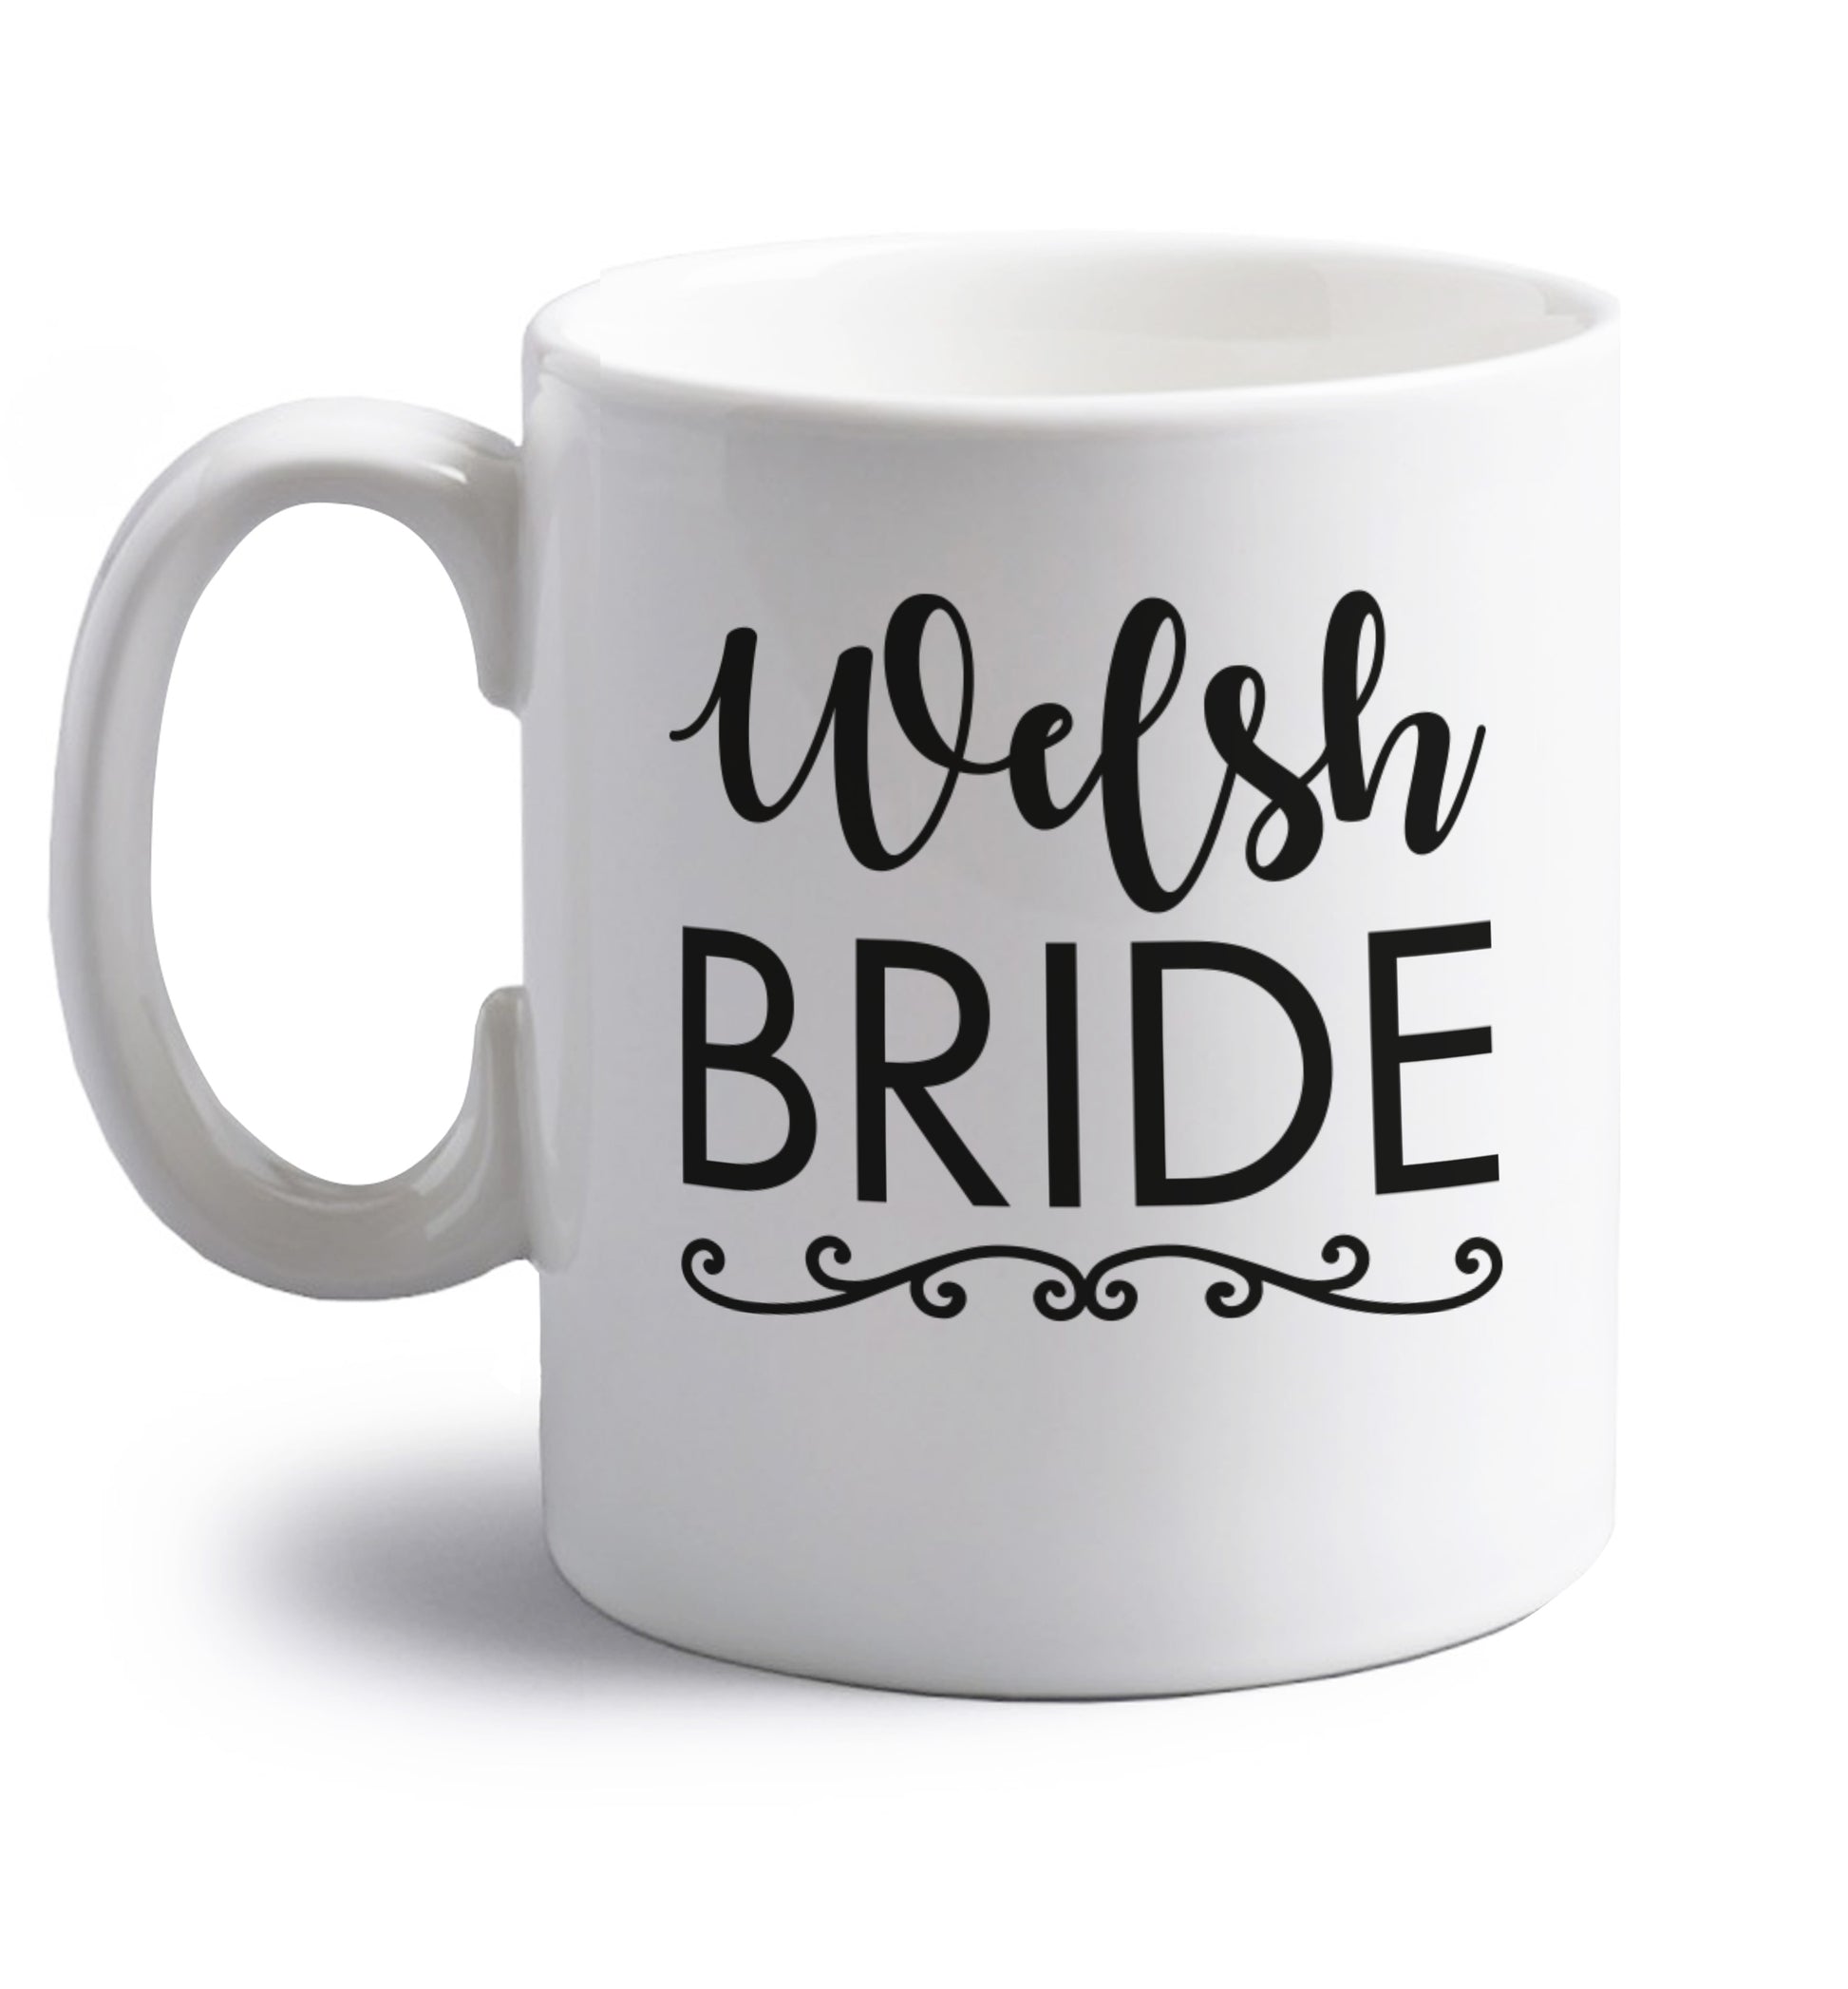 Welsh Bride right handed white ceramic mug 